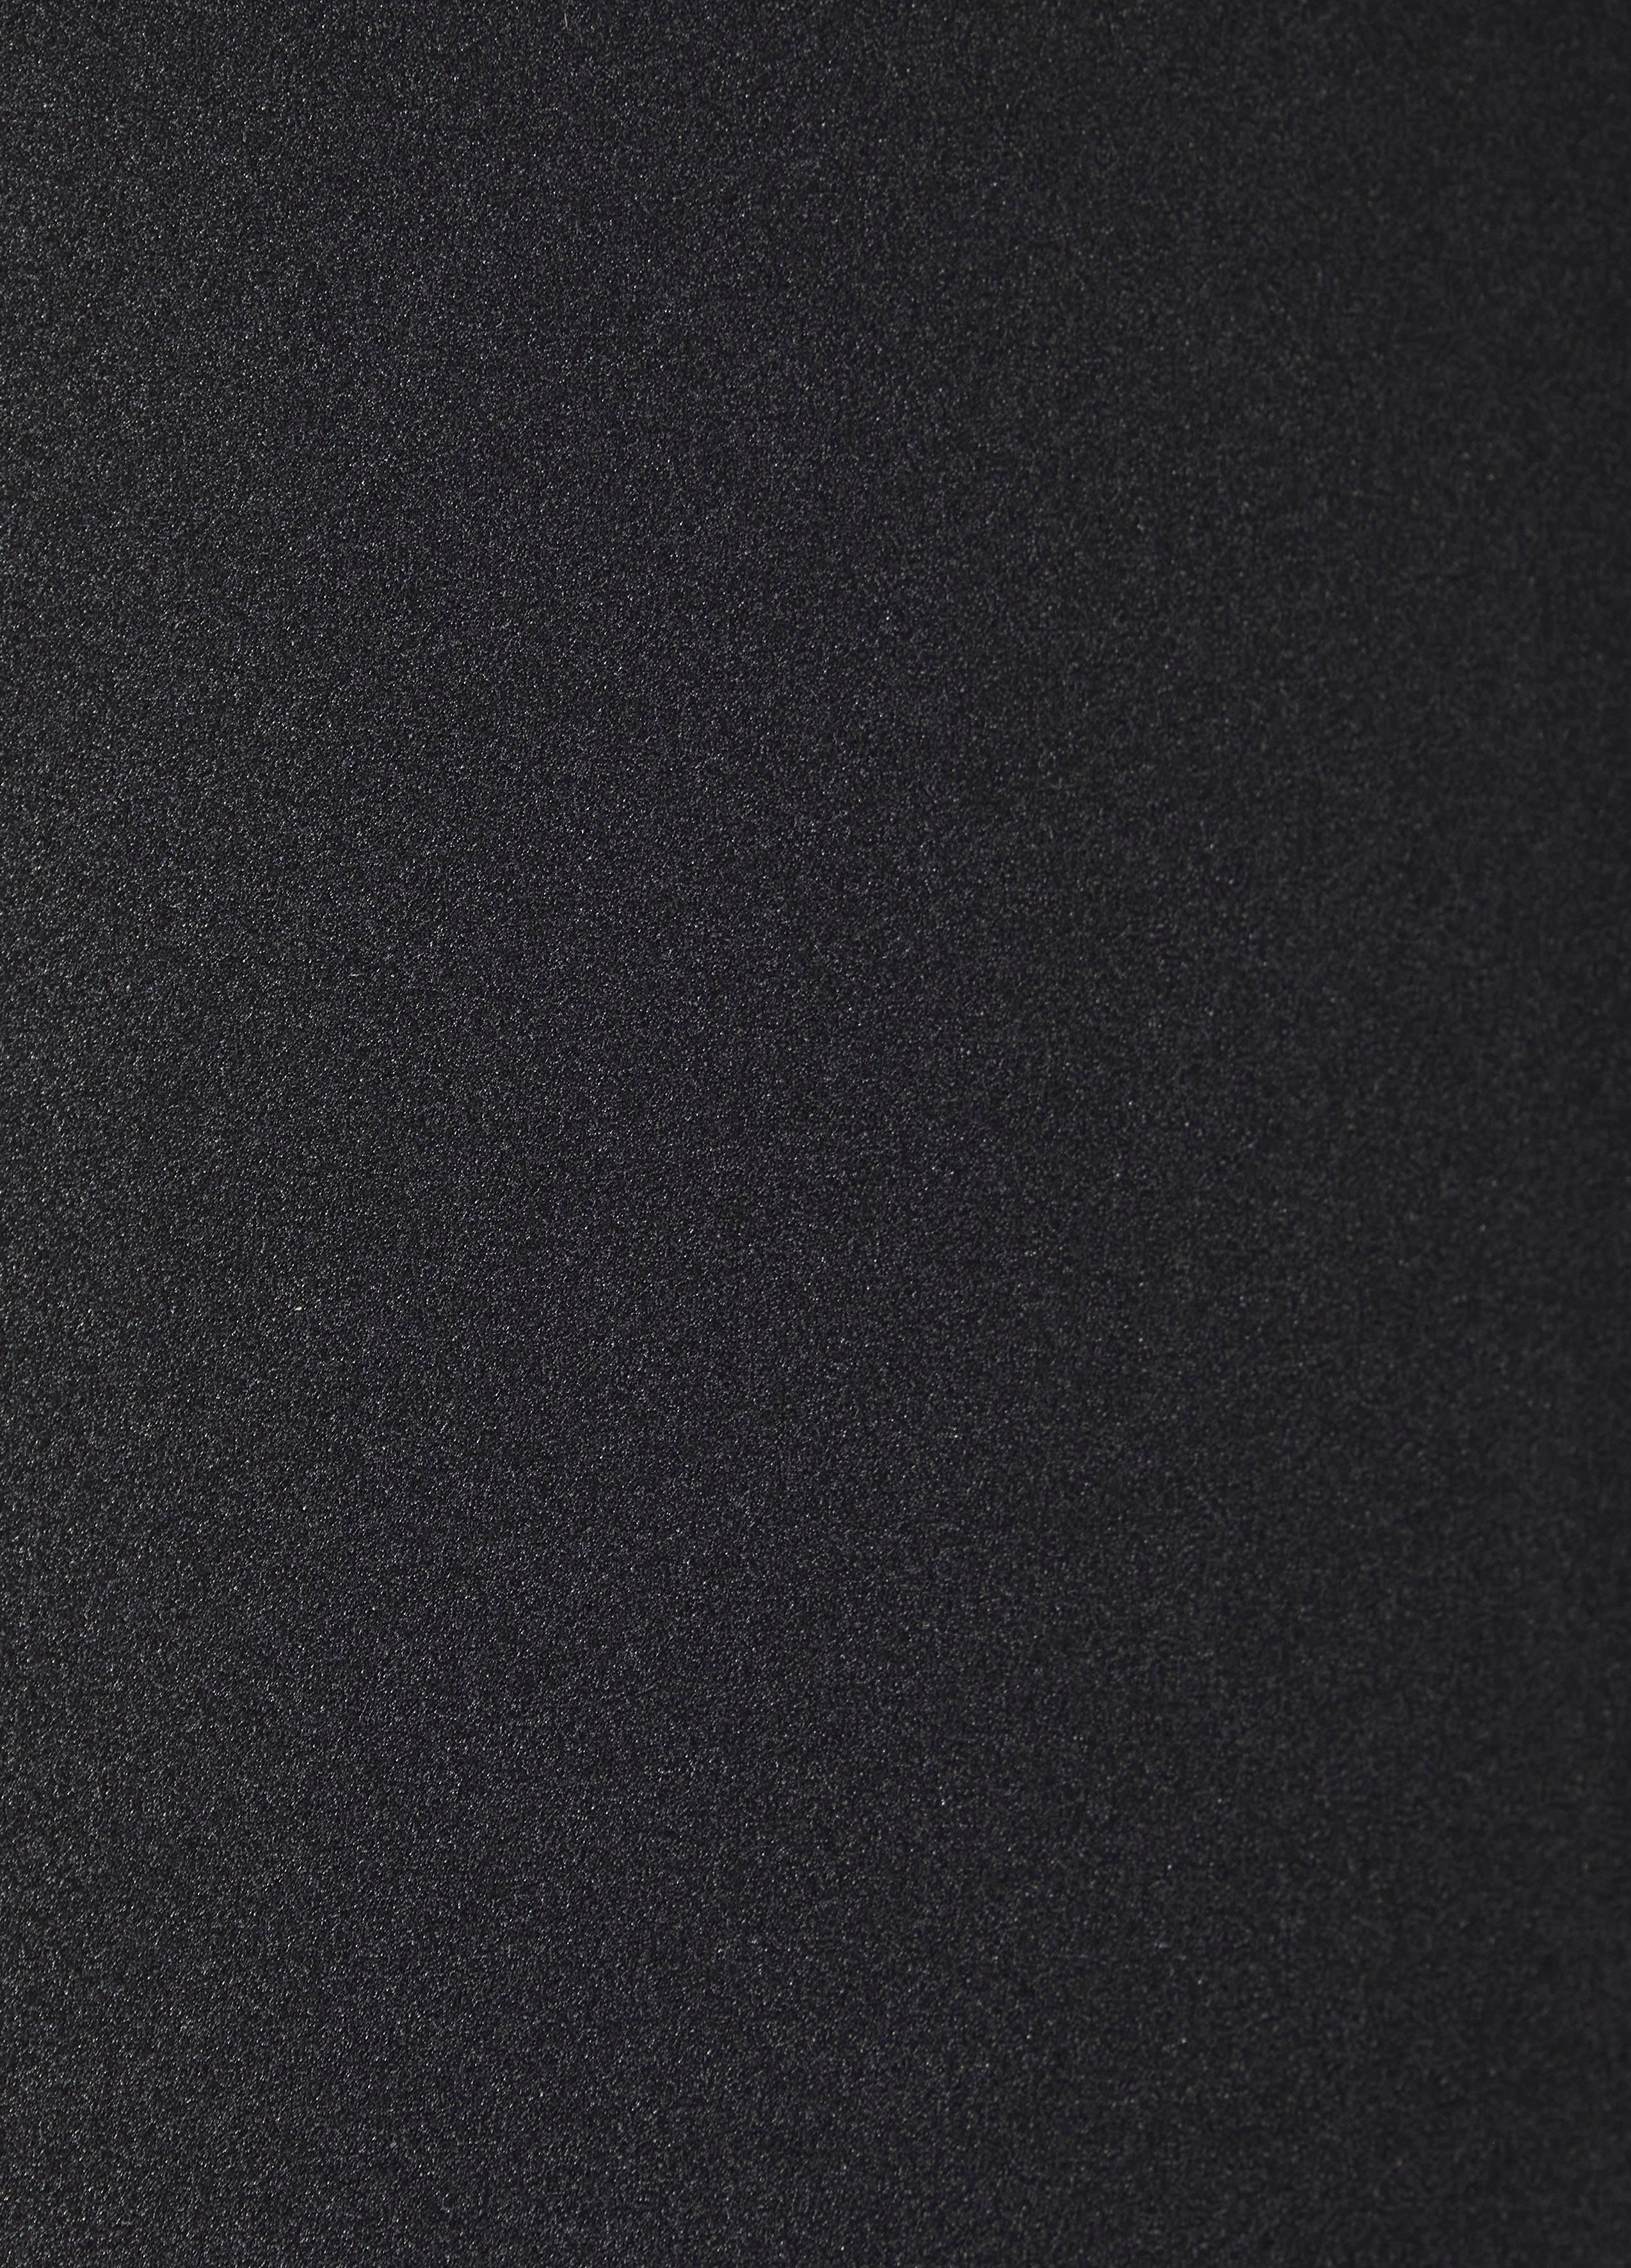 RS677N4AFC, 178,6 91 hoch, breit Side-by-Side schwarz Hisense cm cm